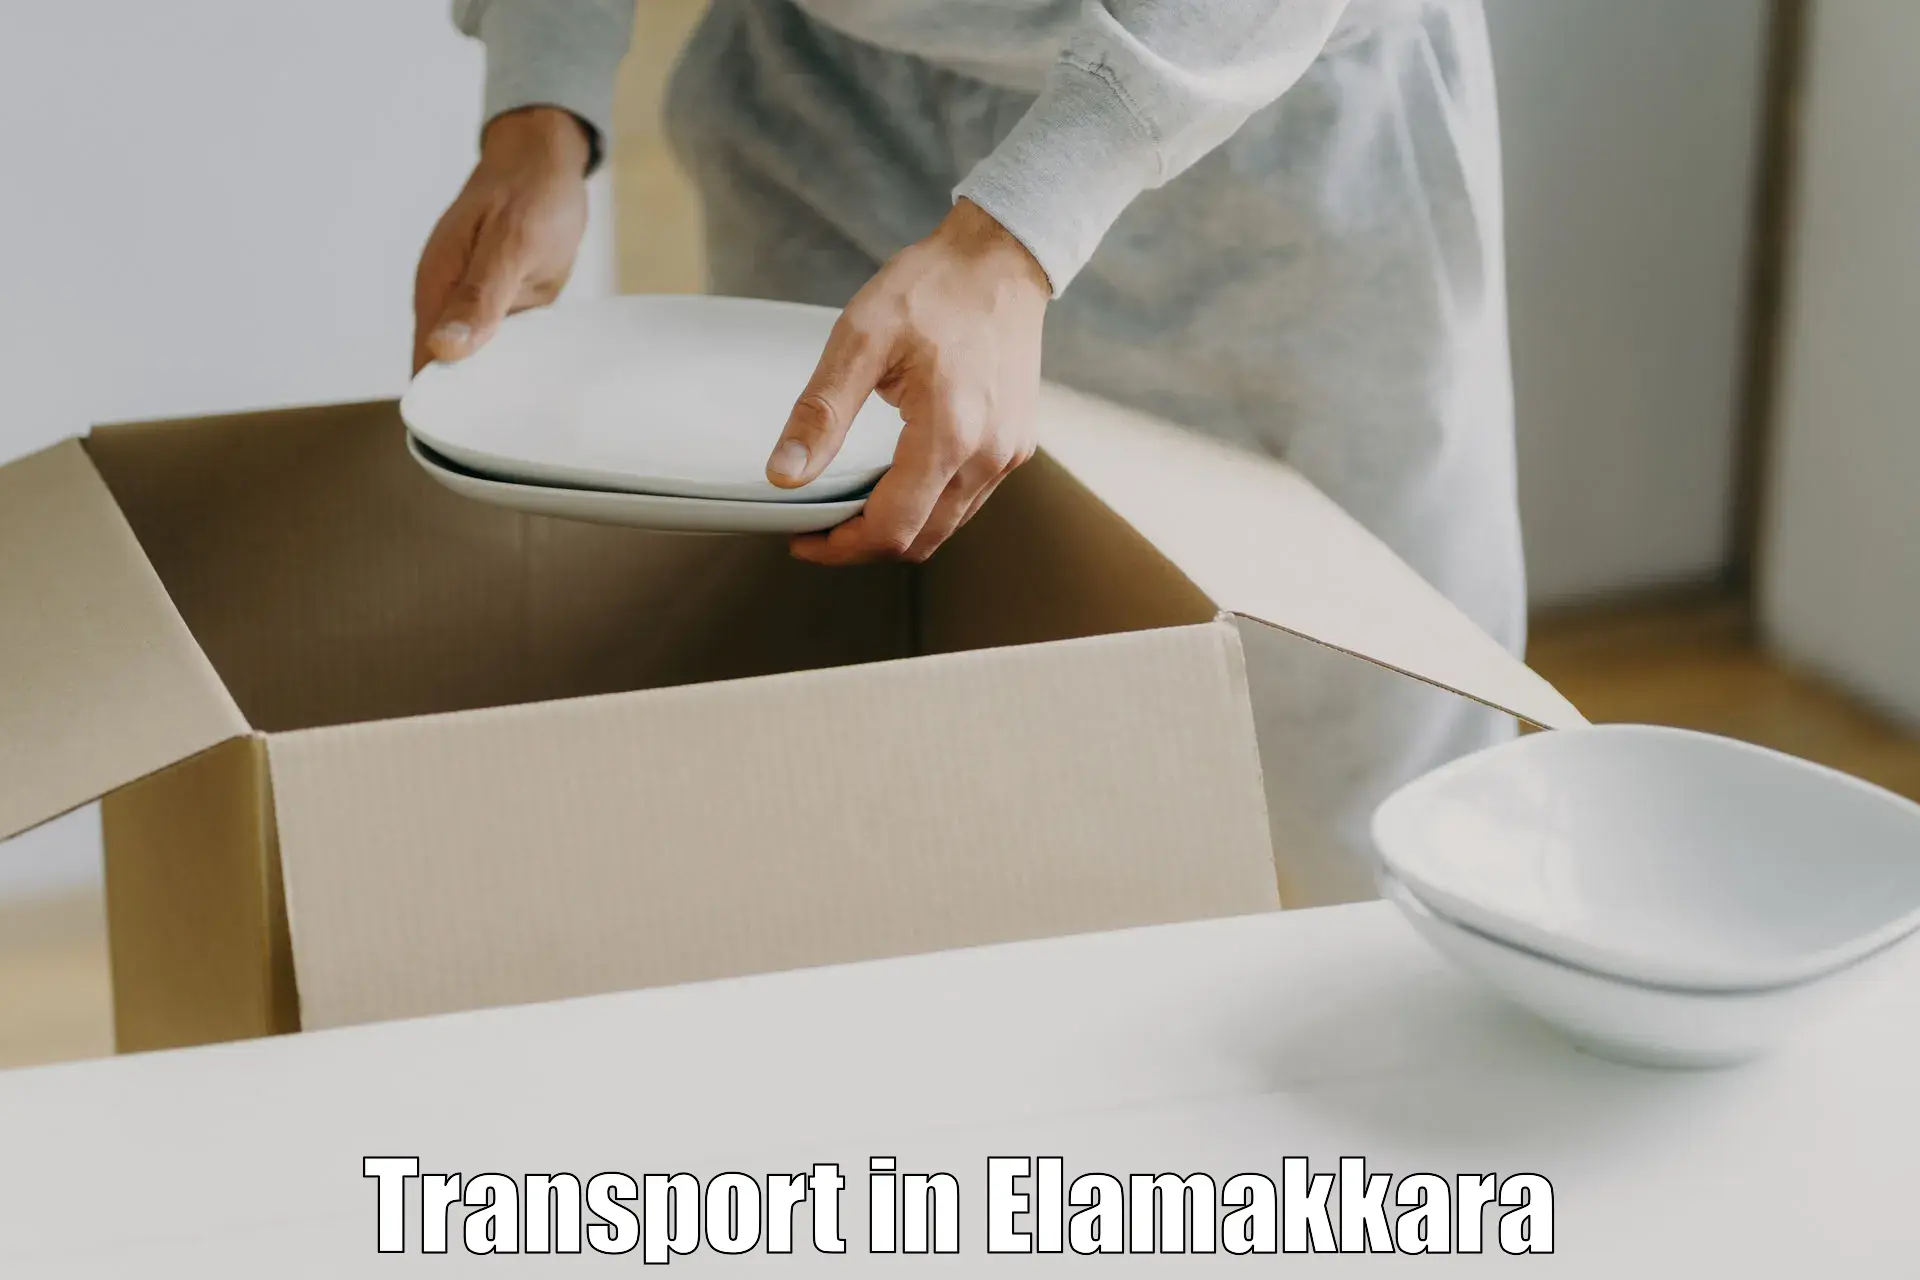 India truck logistics services in Elamakkara